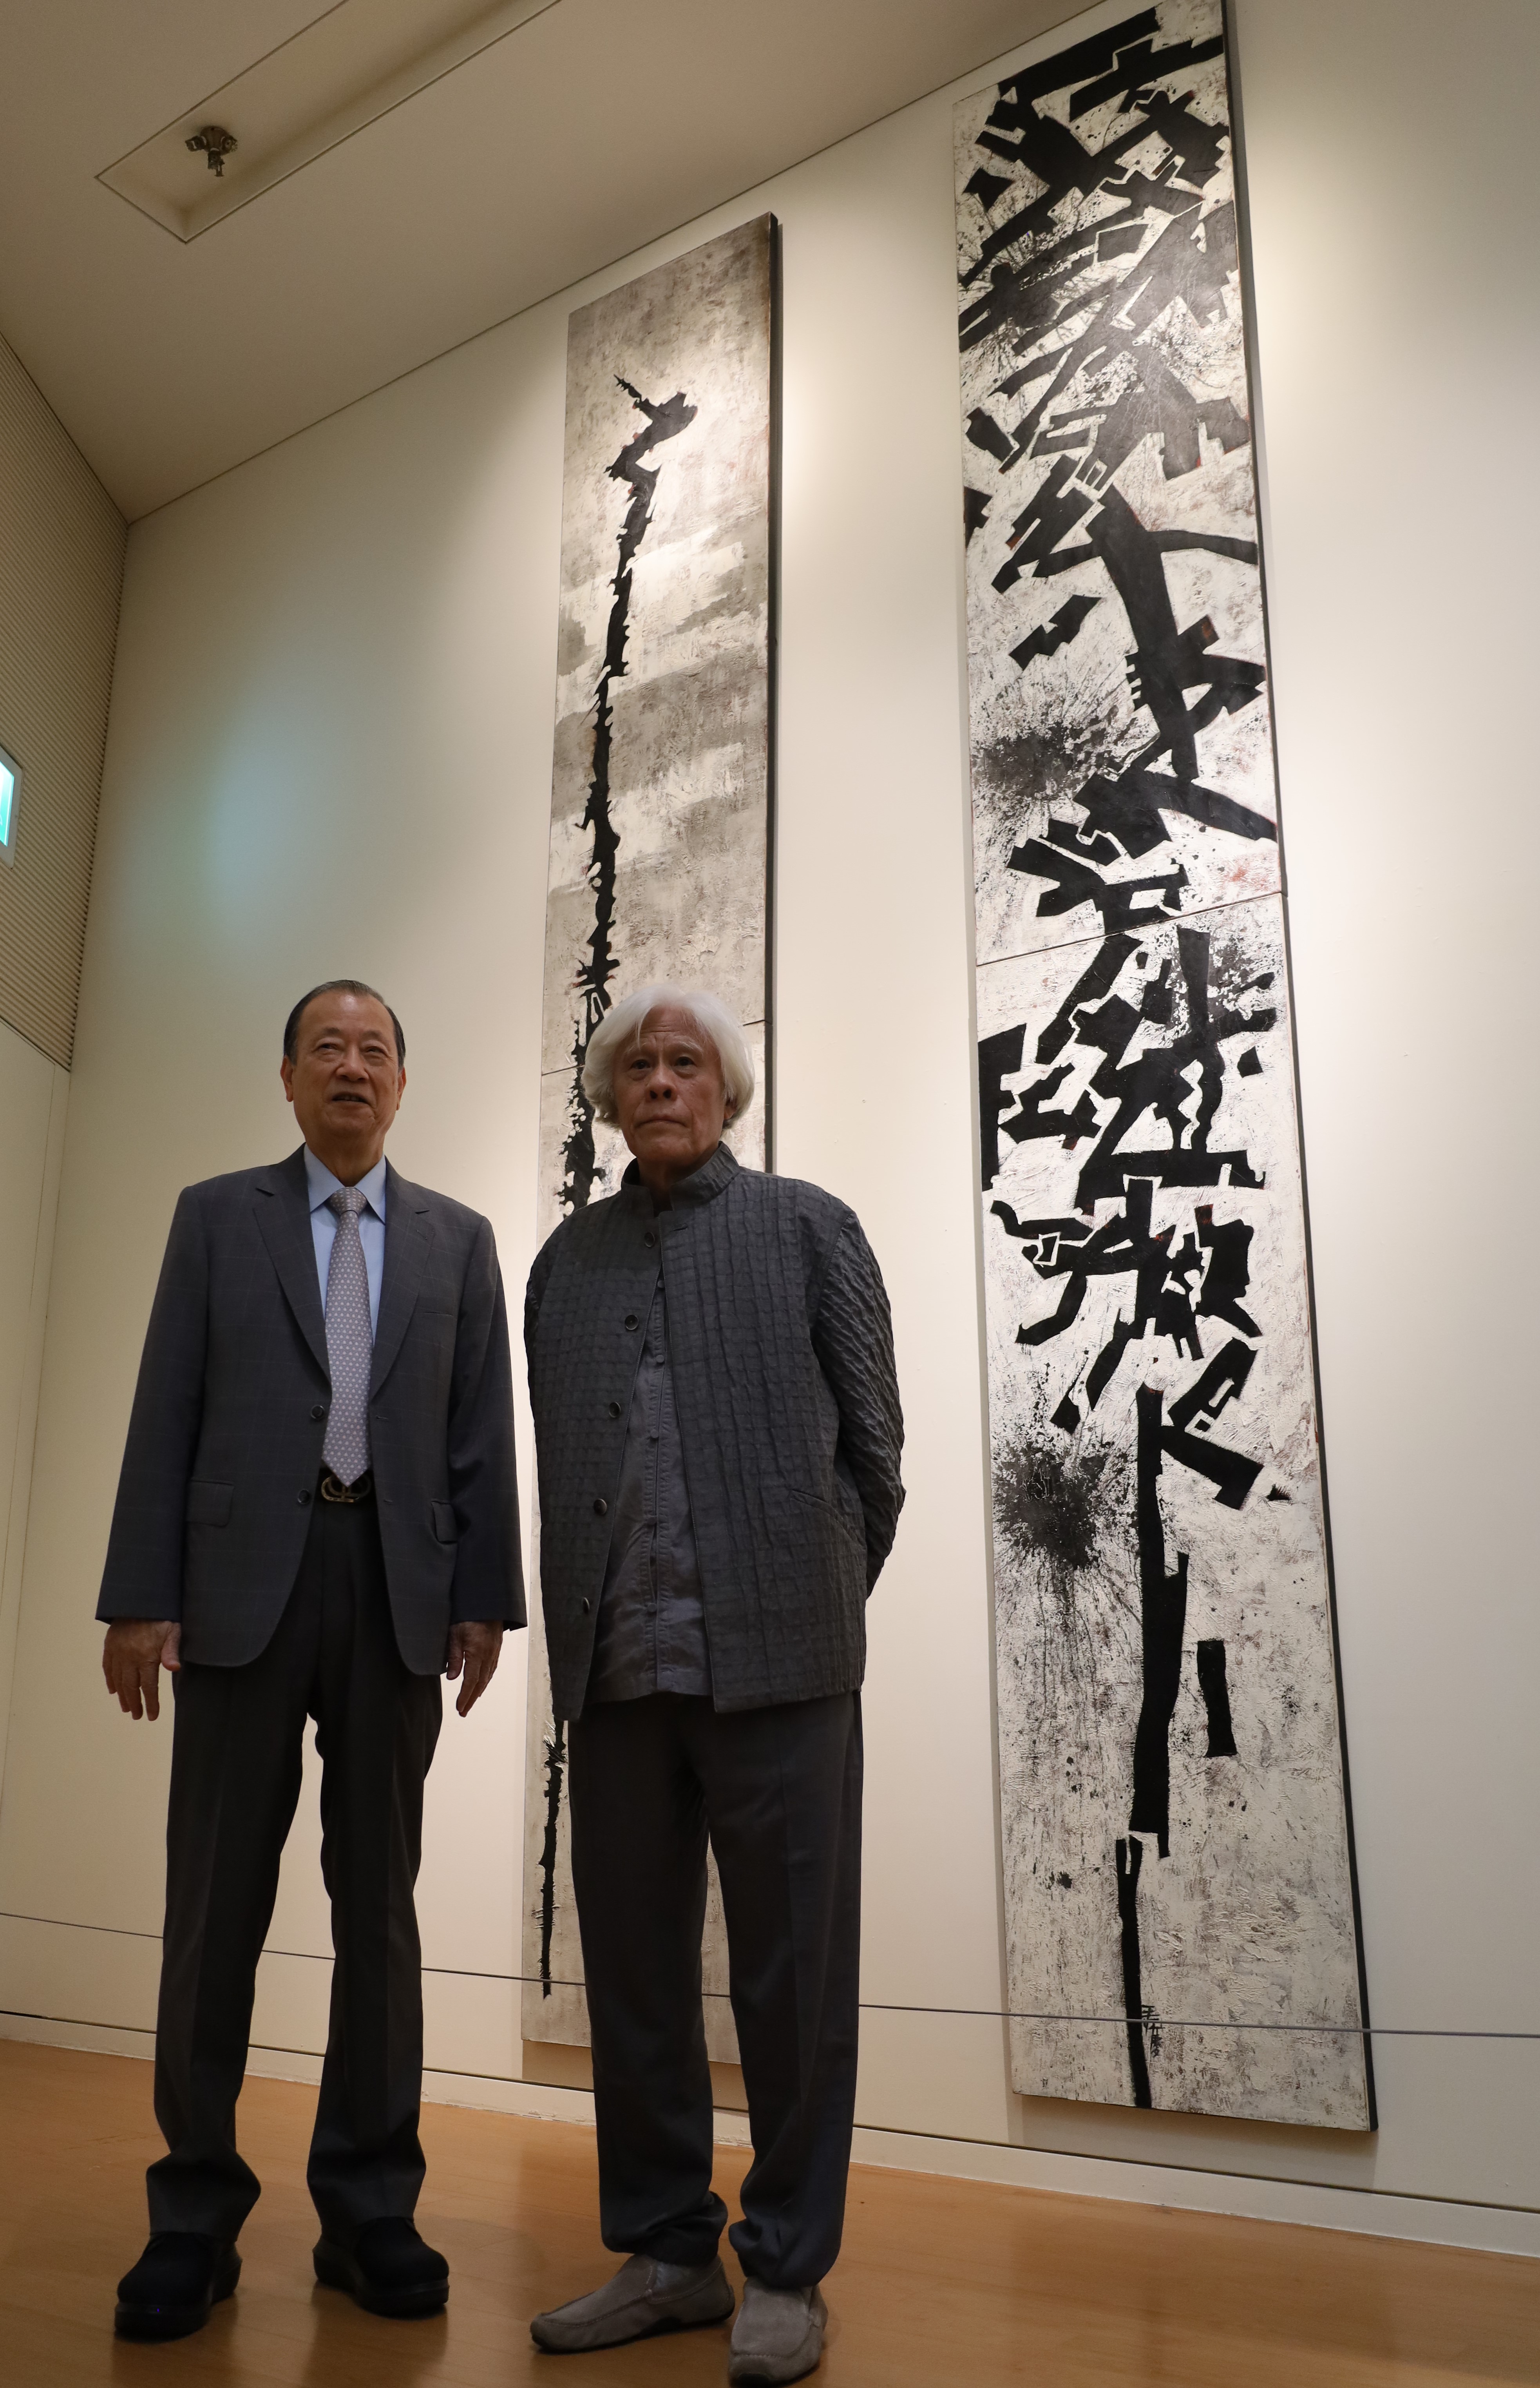 圖為王懷慶大師(右)、亞大創辦人蔡長海，在王懷慶大師的作品《鶴頭杖》、《連環棍》前合影。